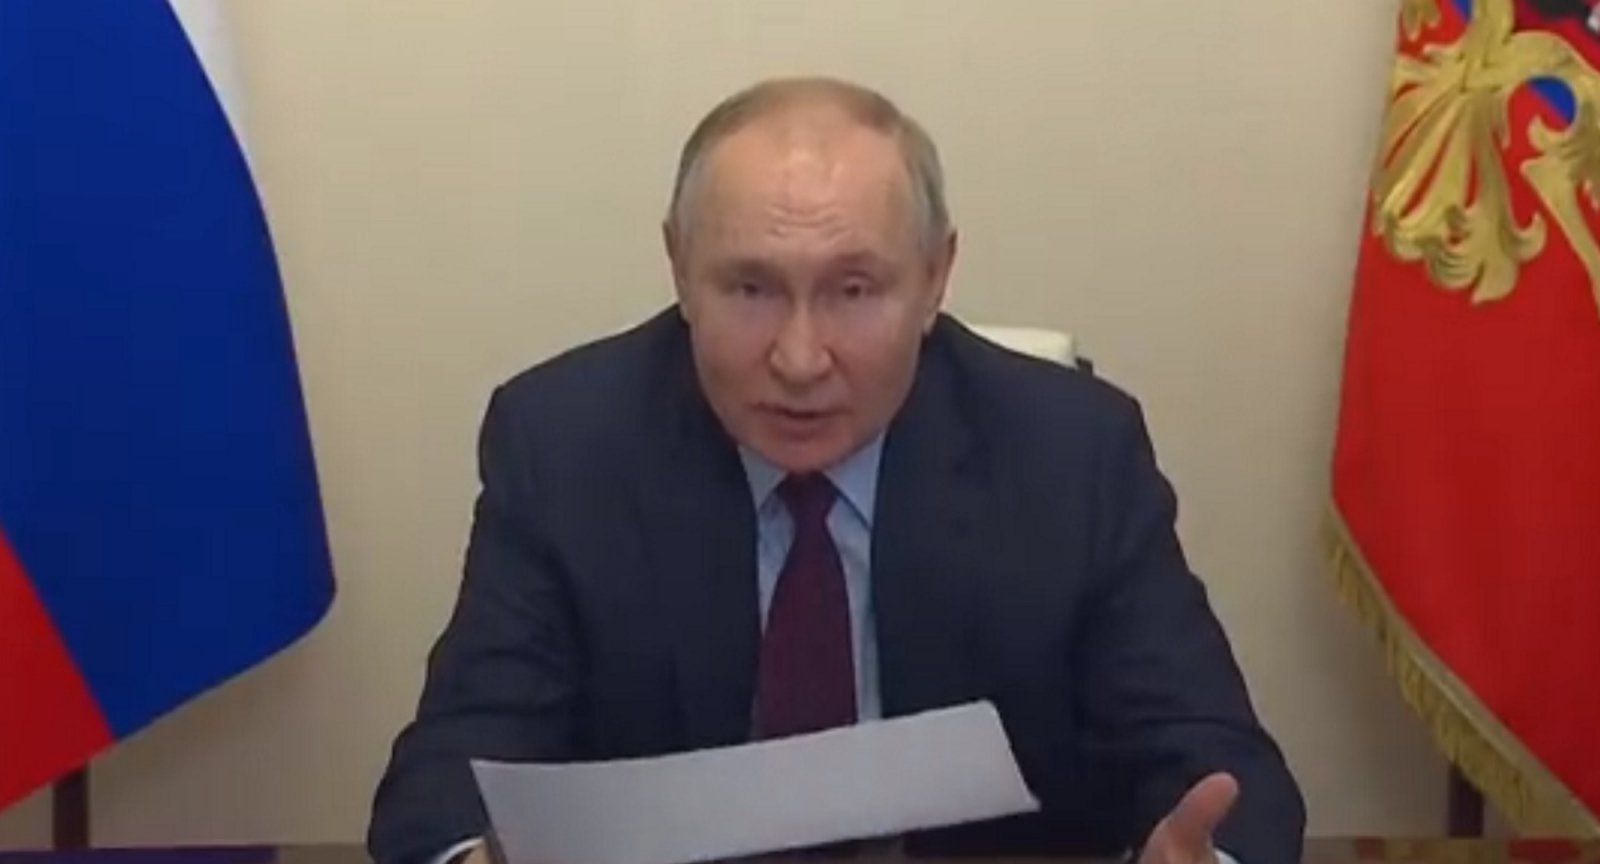 Putinas viešai užsipuolė Rusijos vicepremjerą